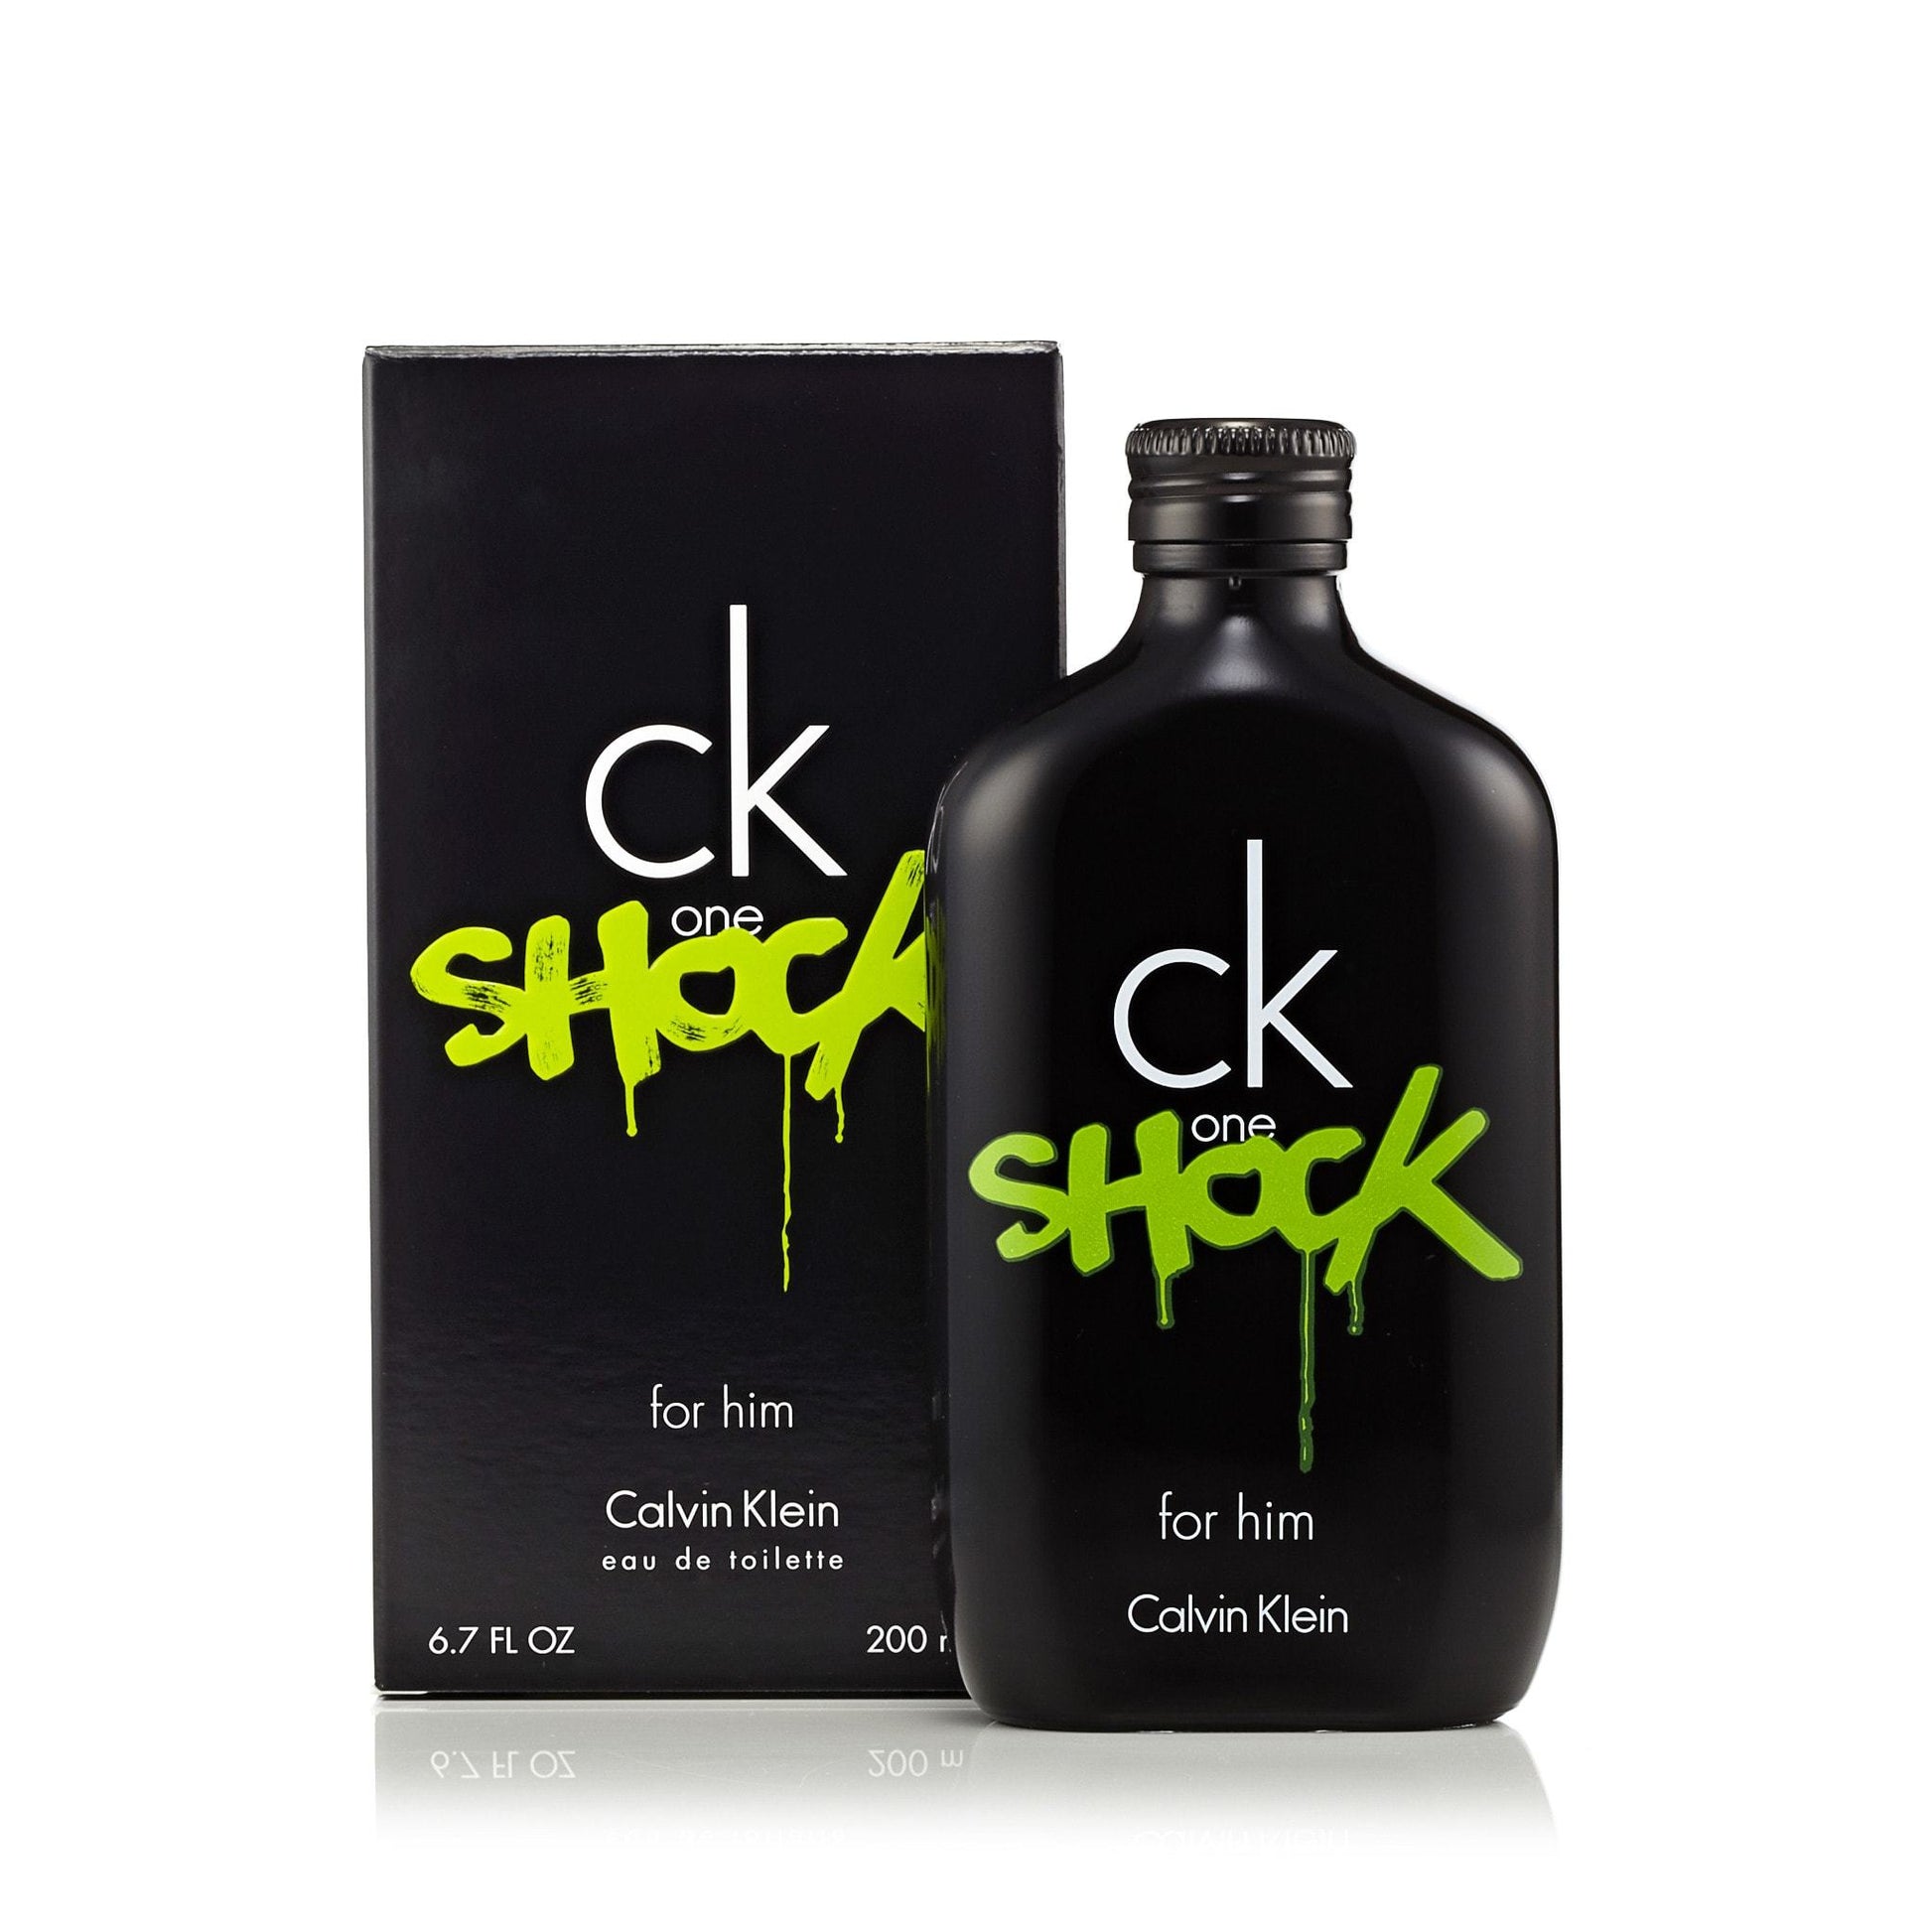 CK One Shock Eau de Toilette Spray for Men by Calvin Klein, Product image 4